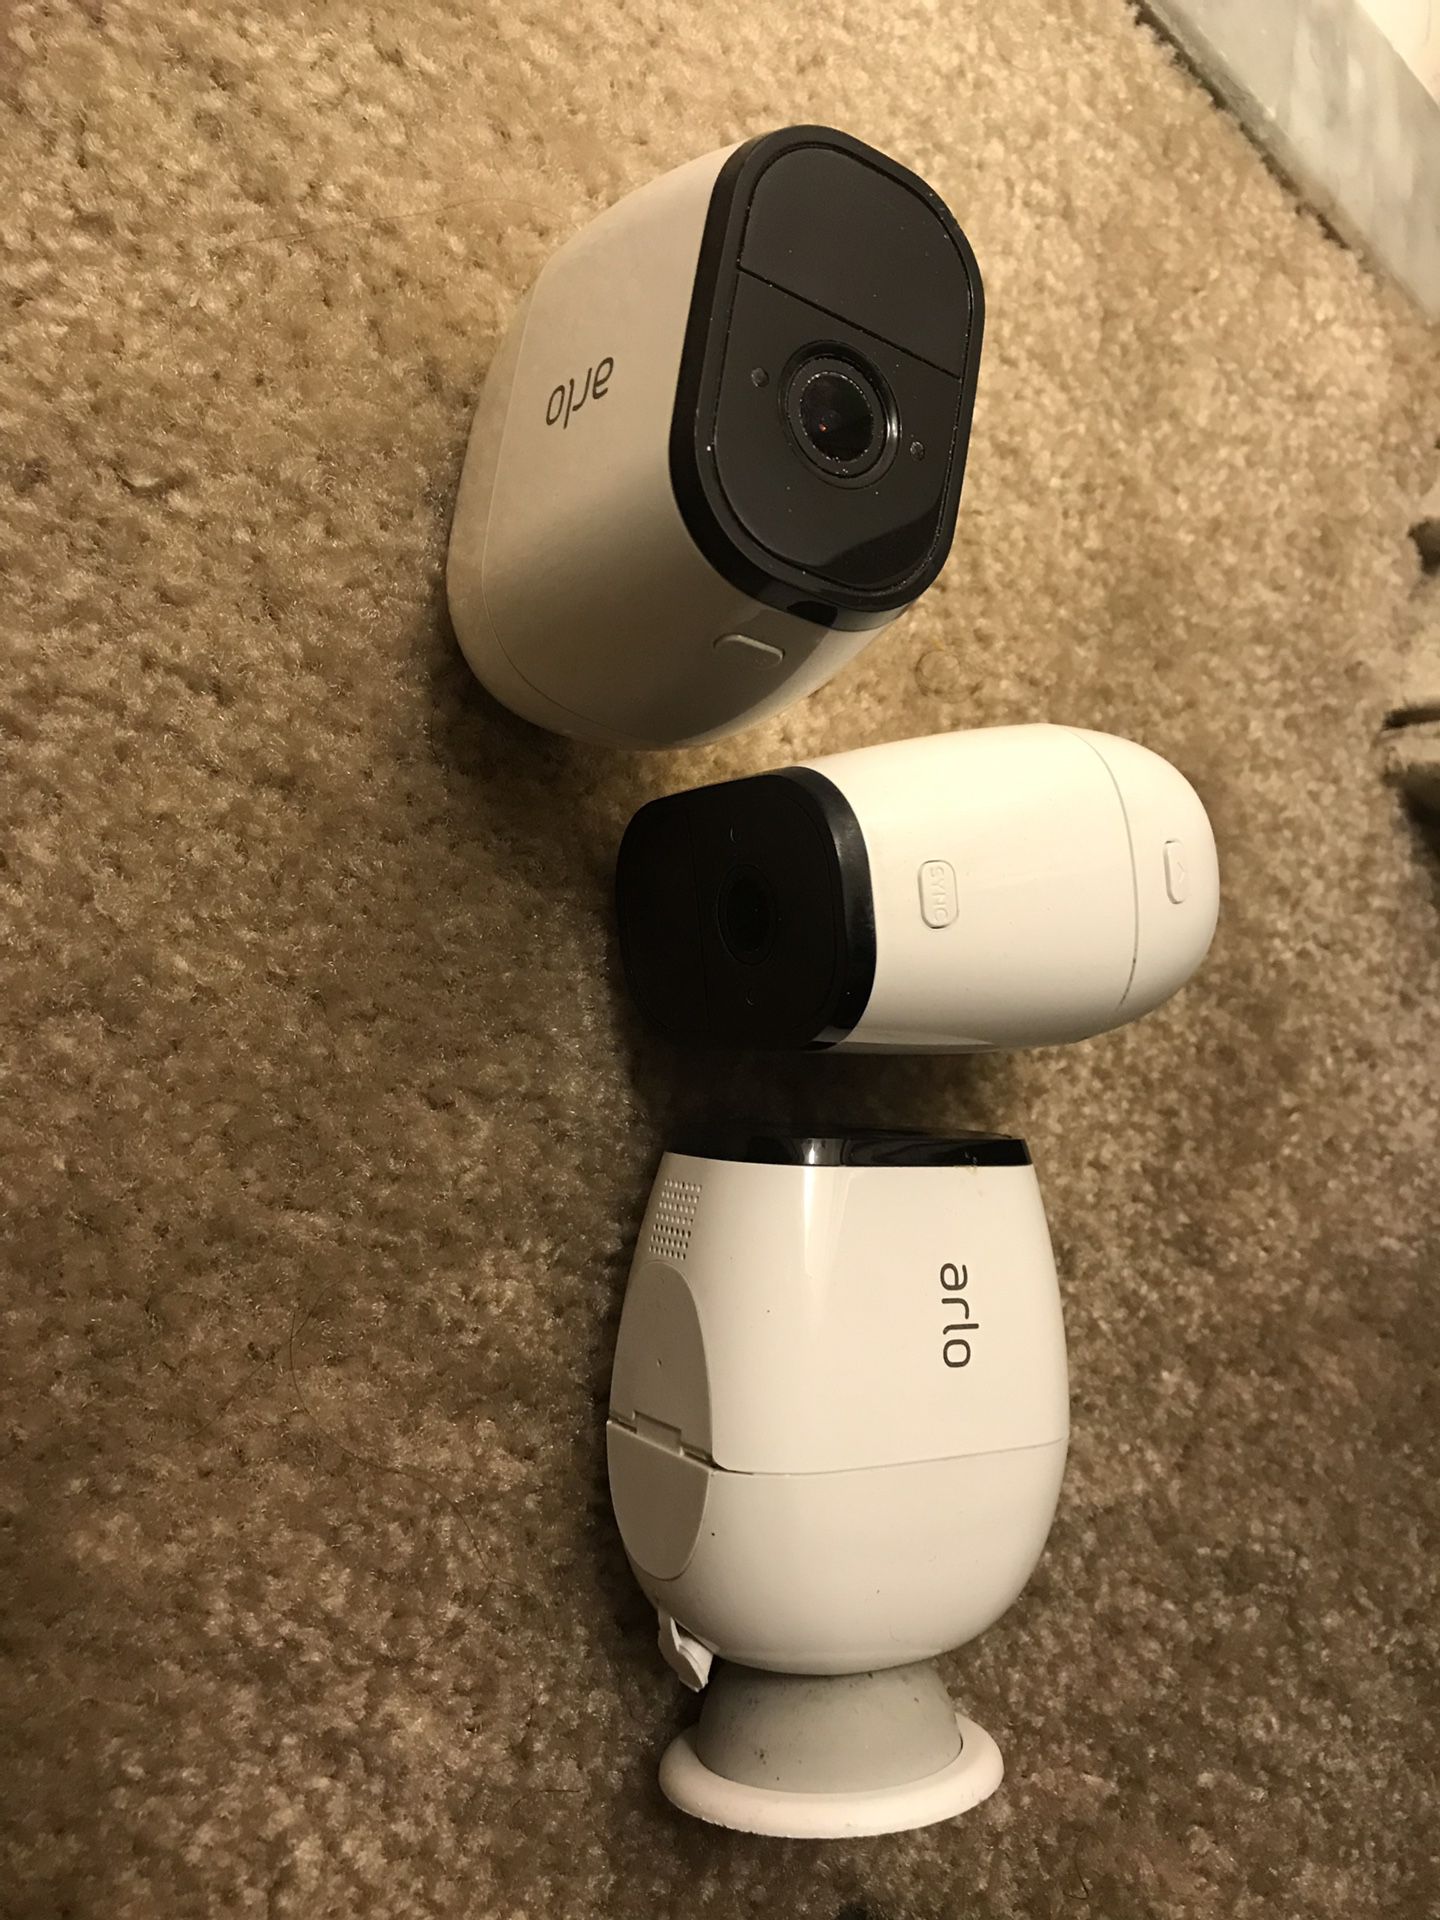 3 Arlo security cameras